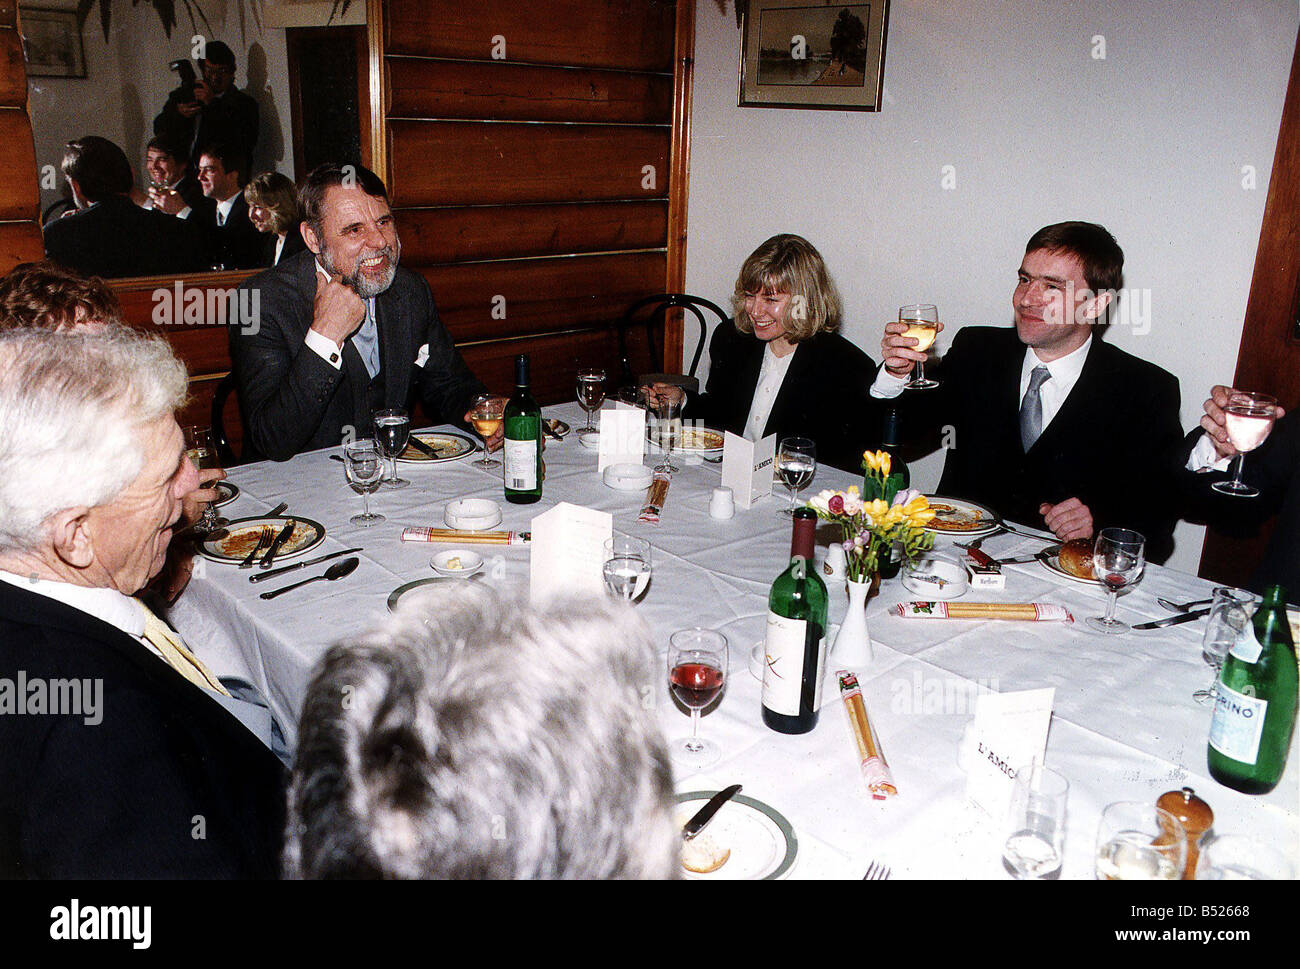 John McCarthy journaliste britannique et ex-otages de Beyrouth à l'ancienne petite amie Jill Morrell et ancien otage Terry Waite lors d'une célébration le déjeuner pour eux à Terry Waites restaurant italien préféré Banque D'Images